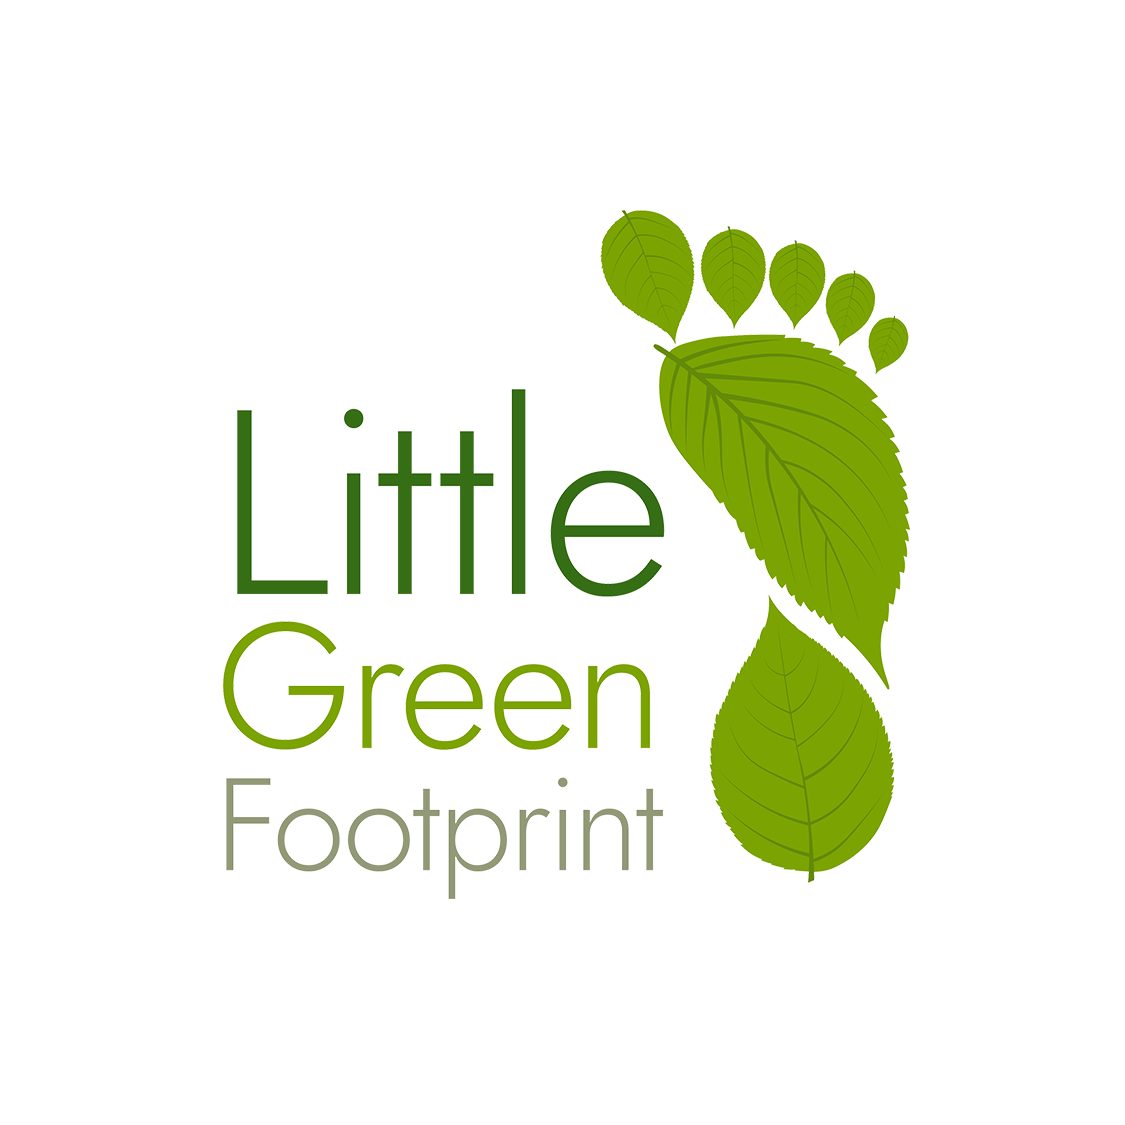 Little Green Footprint